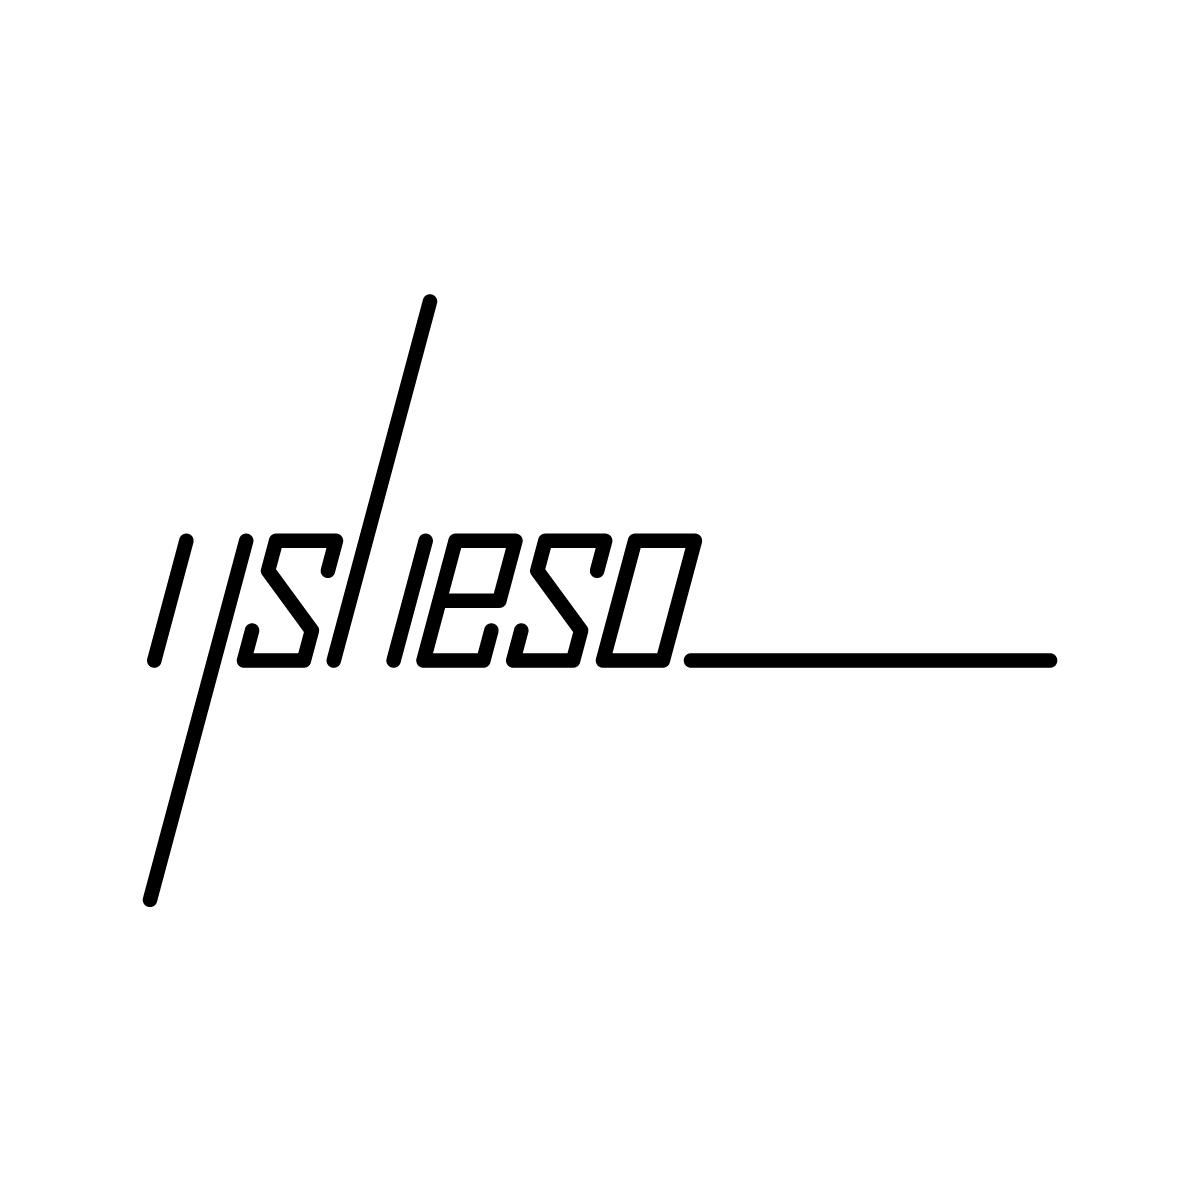 ysheso logo 1